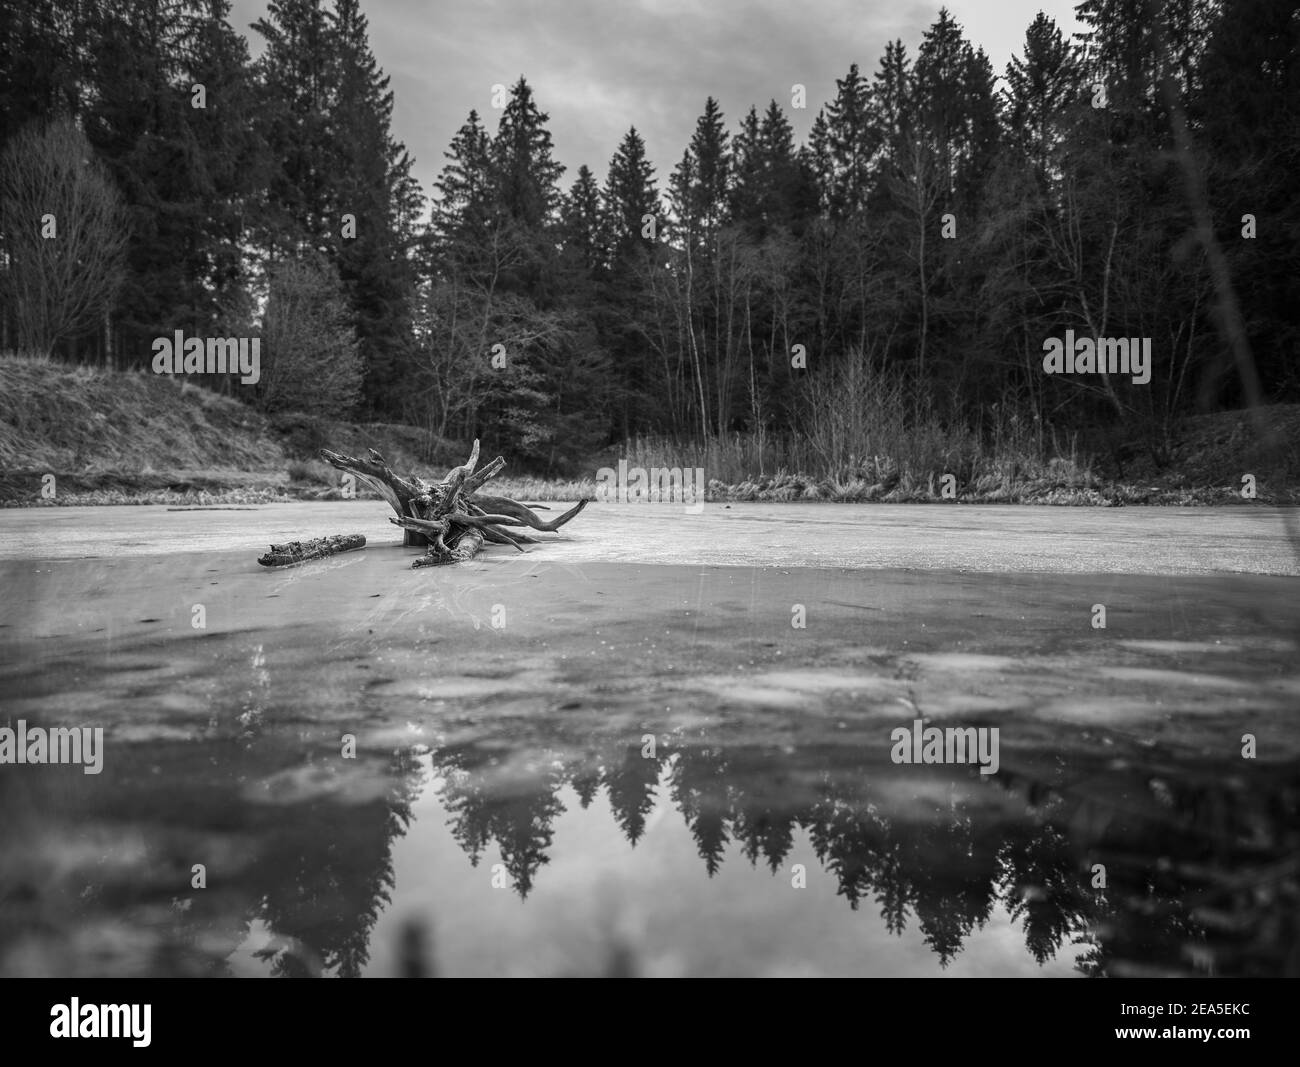 Paysage d'hiver vue sur un lac gelé avec des parties d'eau, qui reflète les arbres de la forêt environnante. Banque D'Images